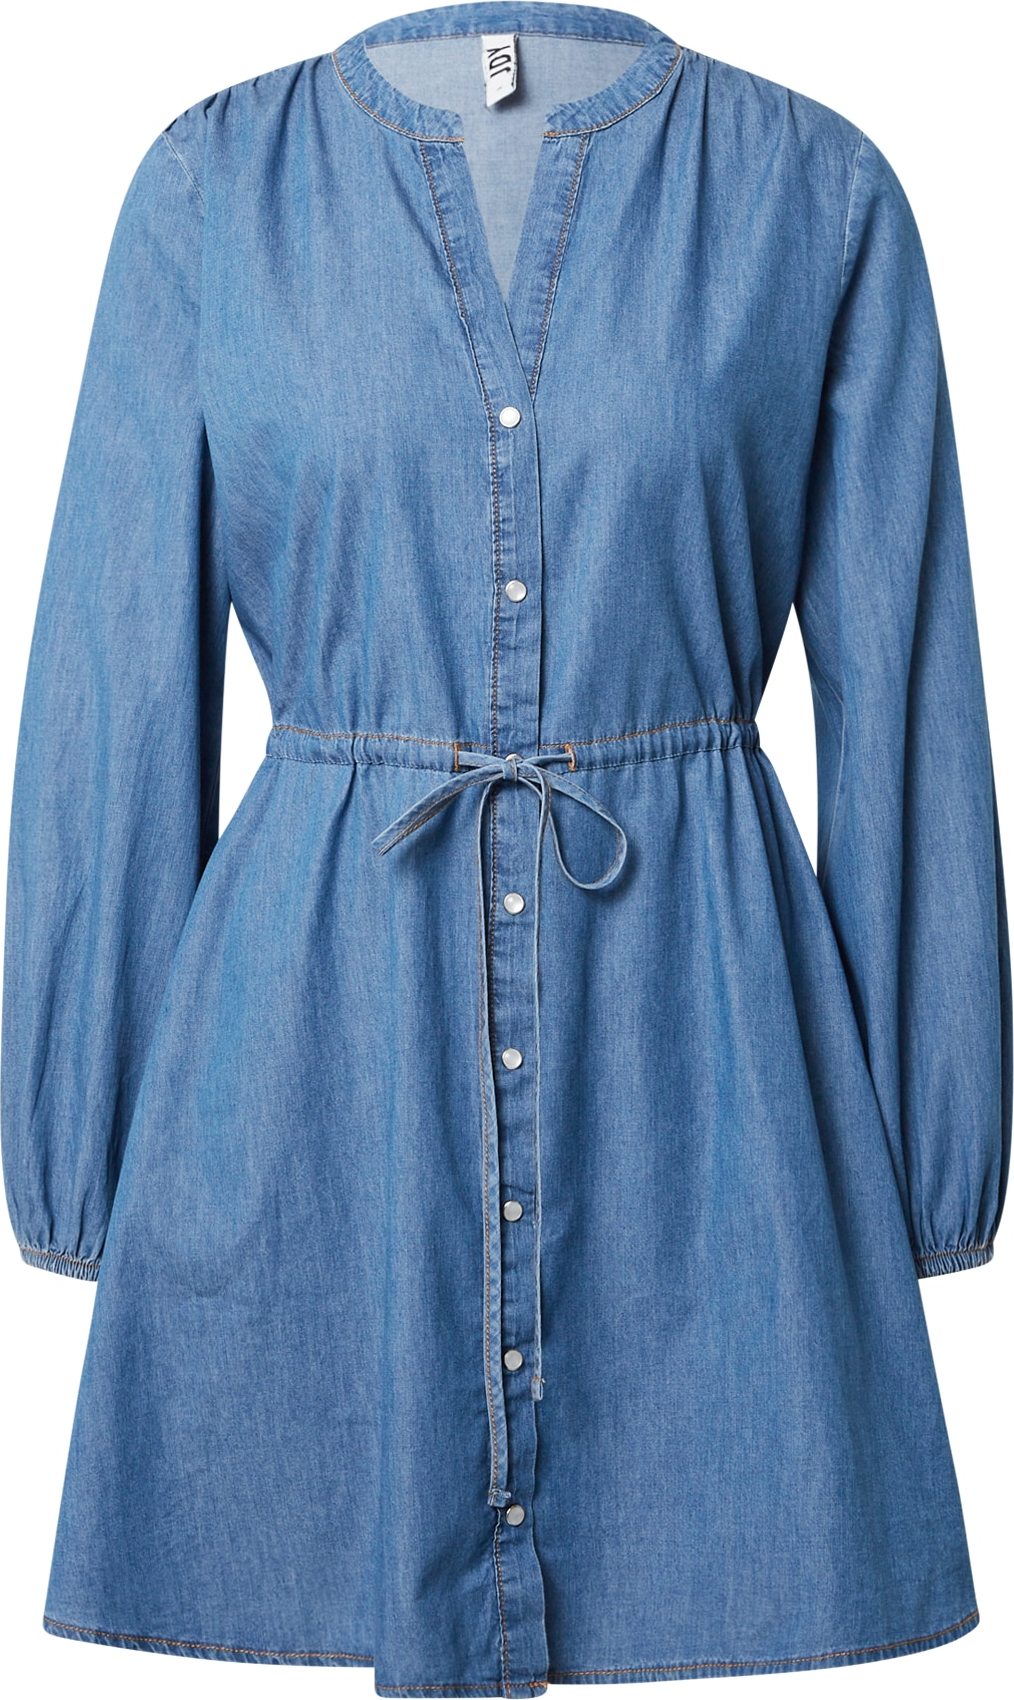 JDY Košilové šaty 'Saint' modrá džínovina